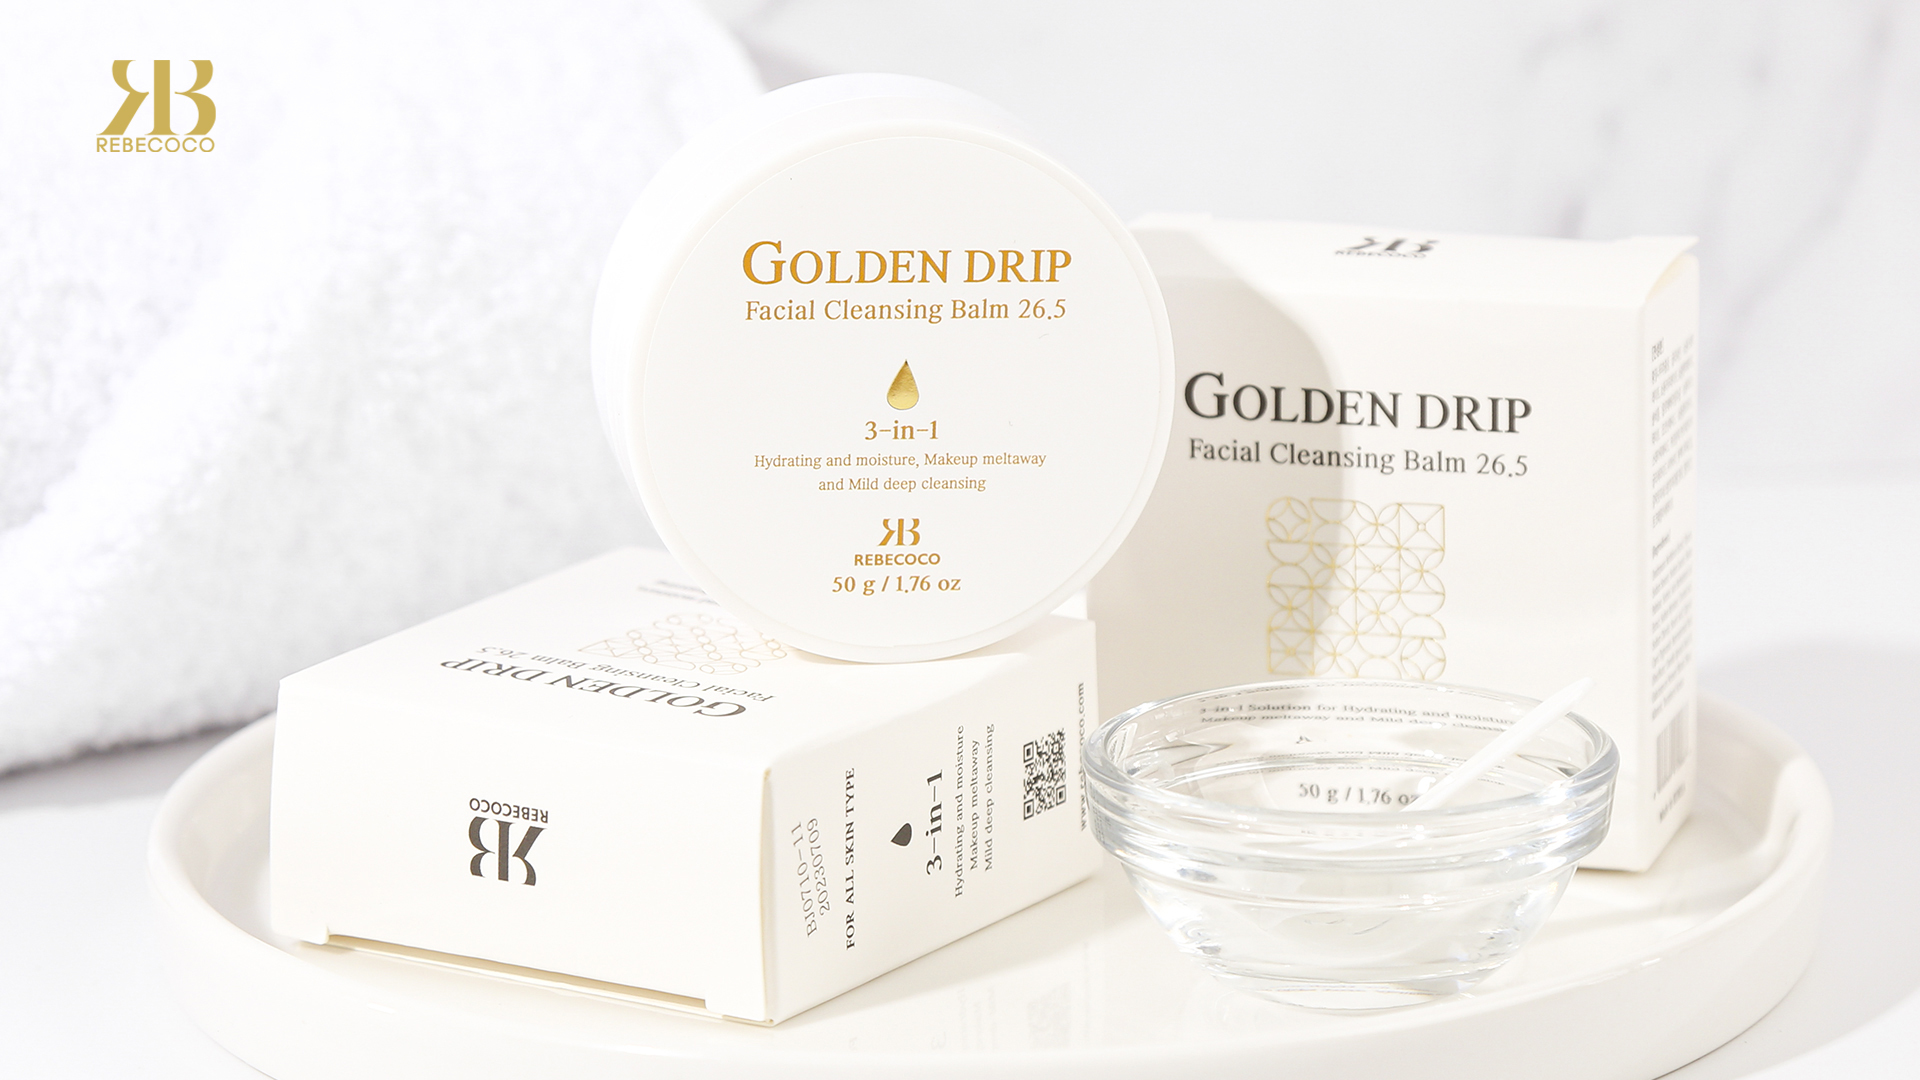 Golden Drip Facial Cleansing Balm 26.5